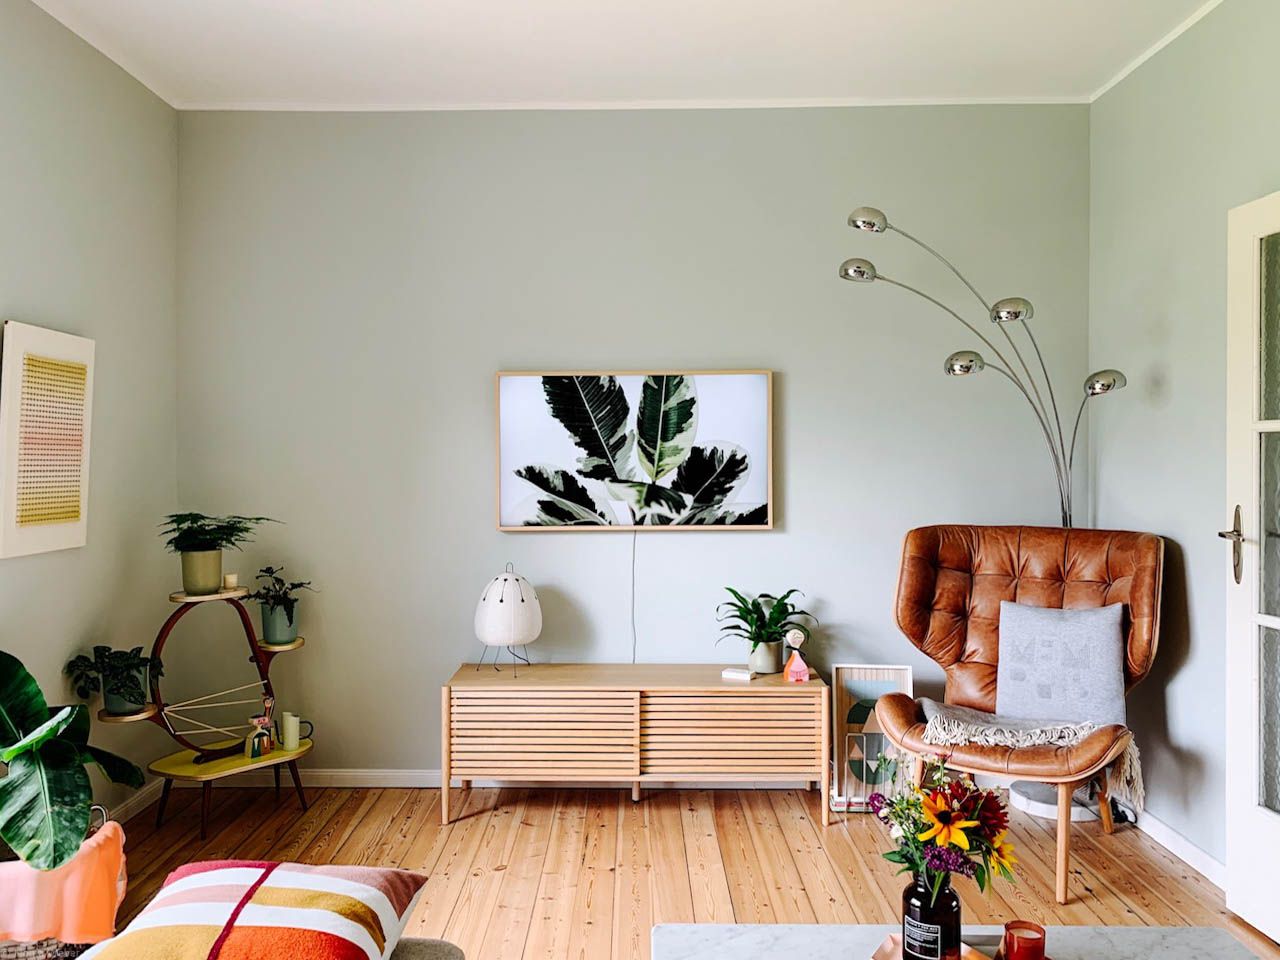 farbfreude: sarahs wohnzimmer in pastellgrün – kolorat